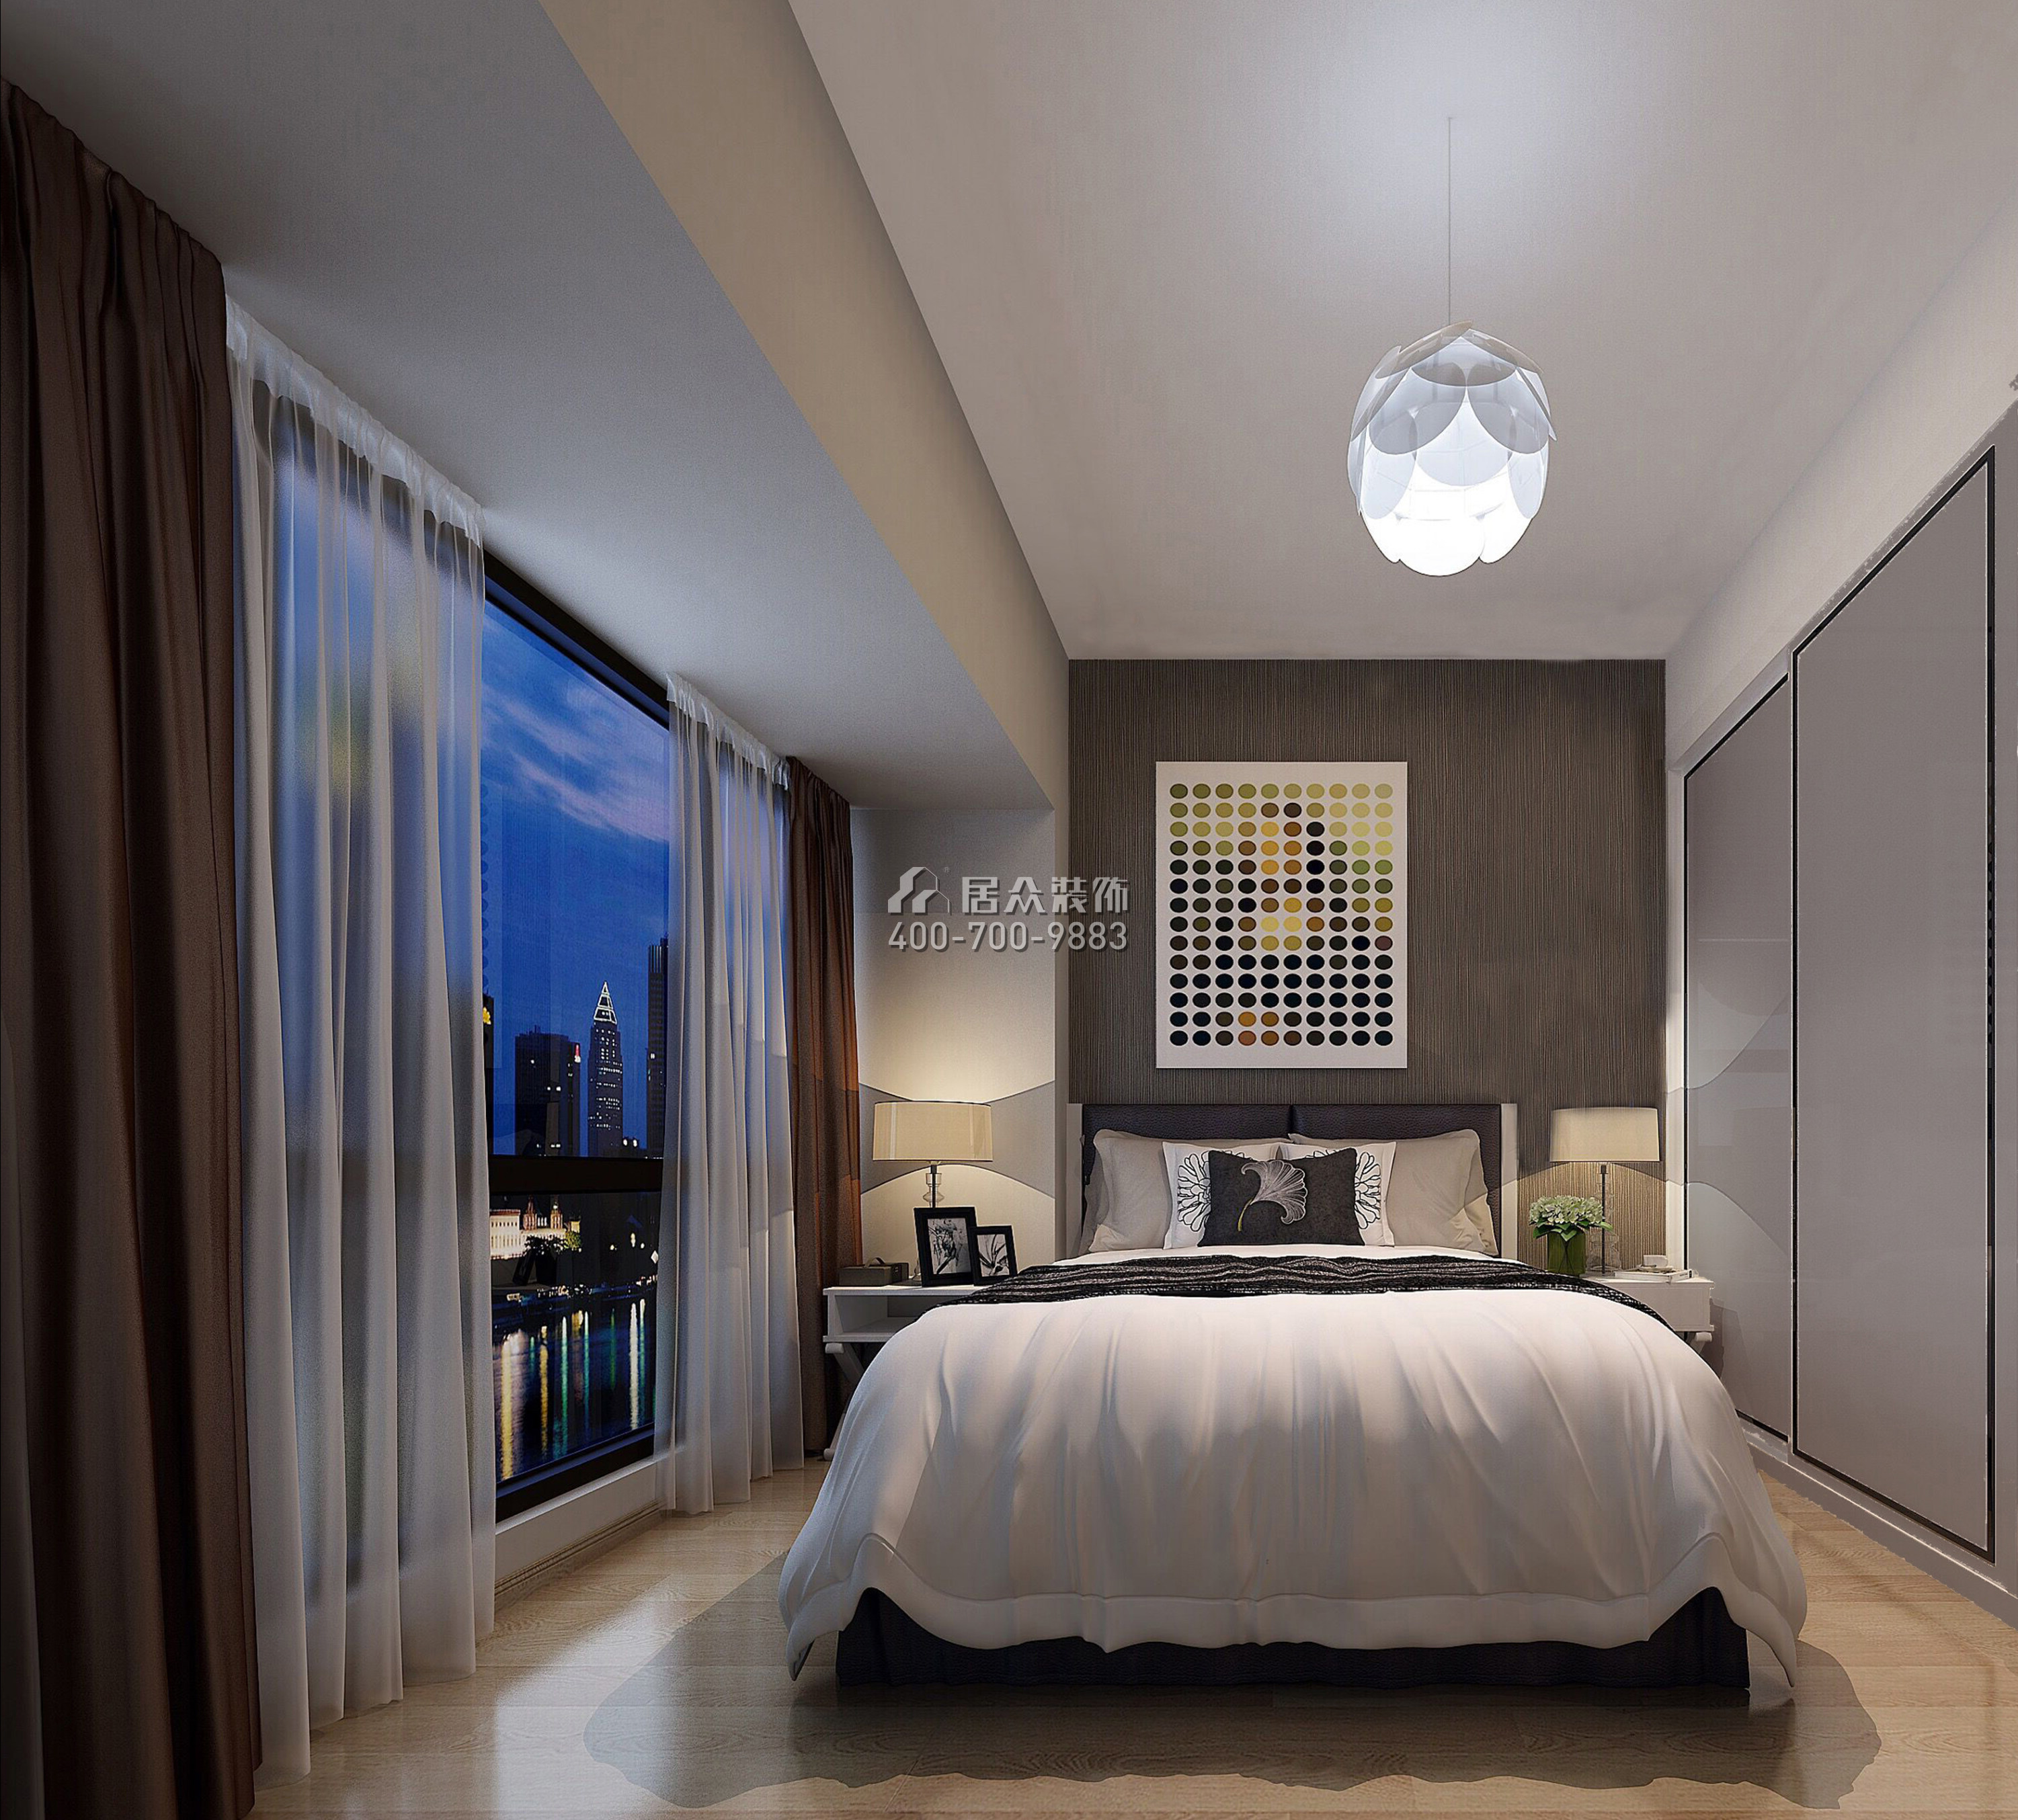 中骏四季阳光85平方米现代简约风格平层户型卧室装修效果图